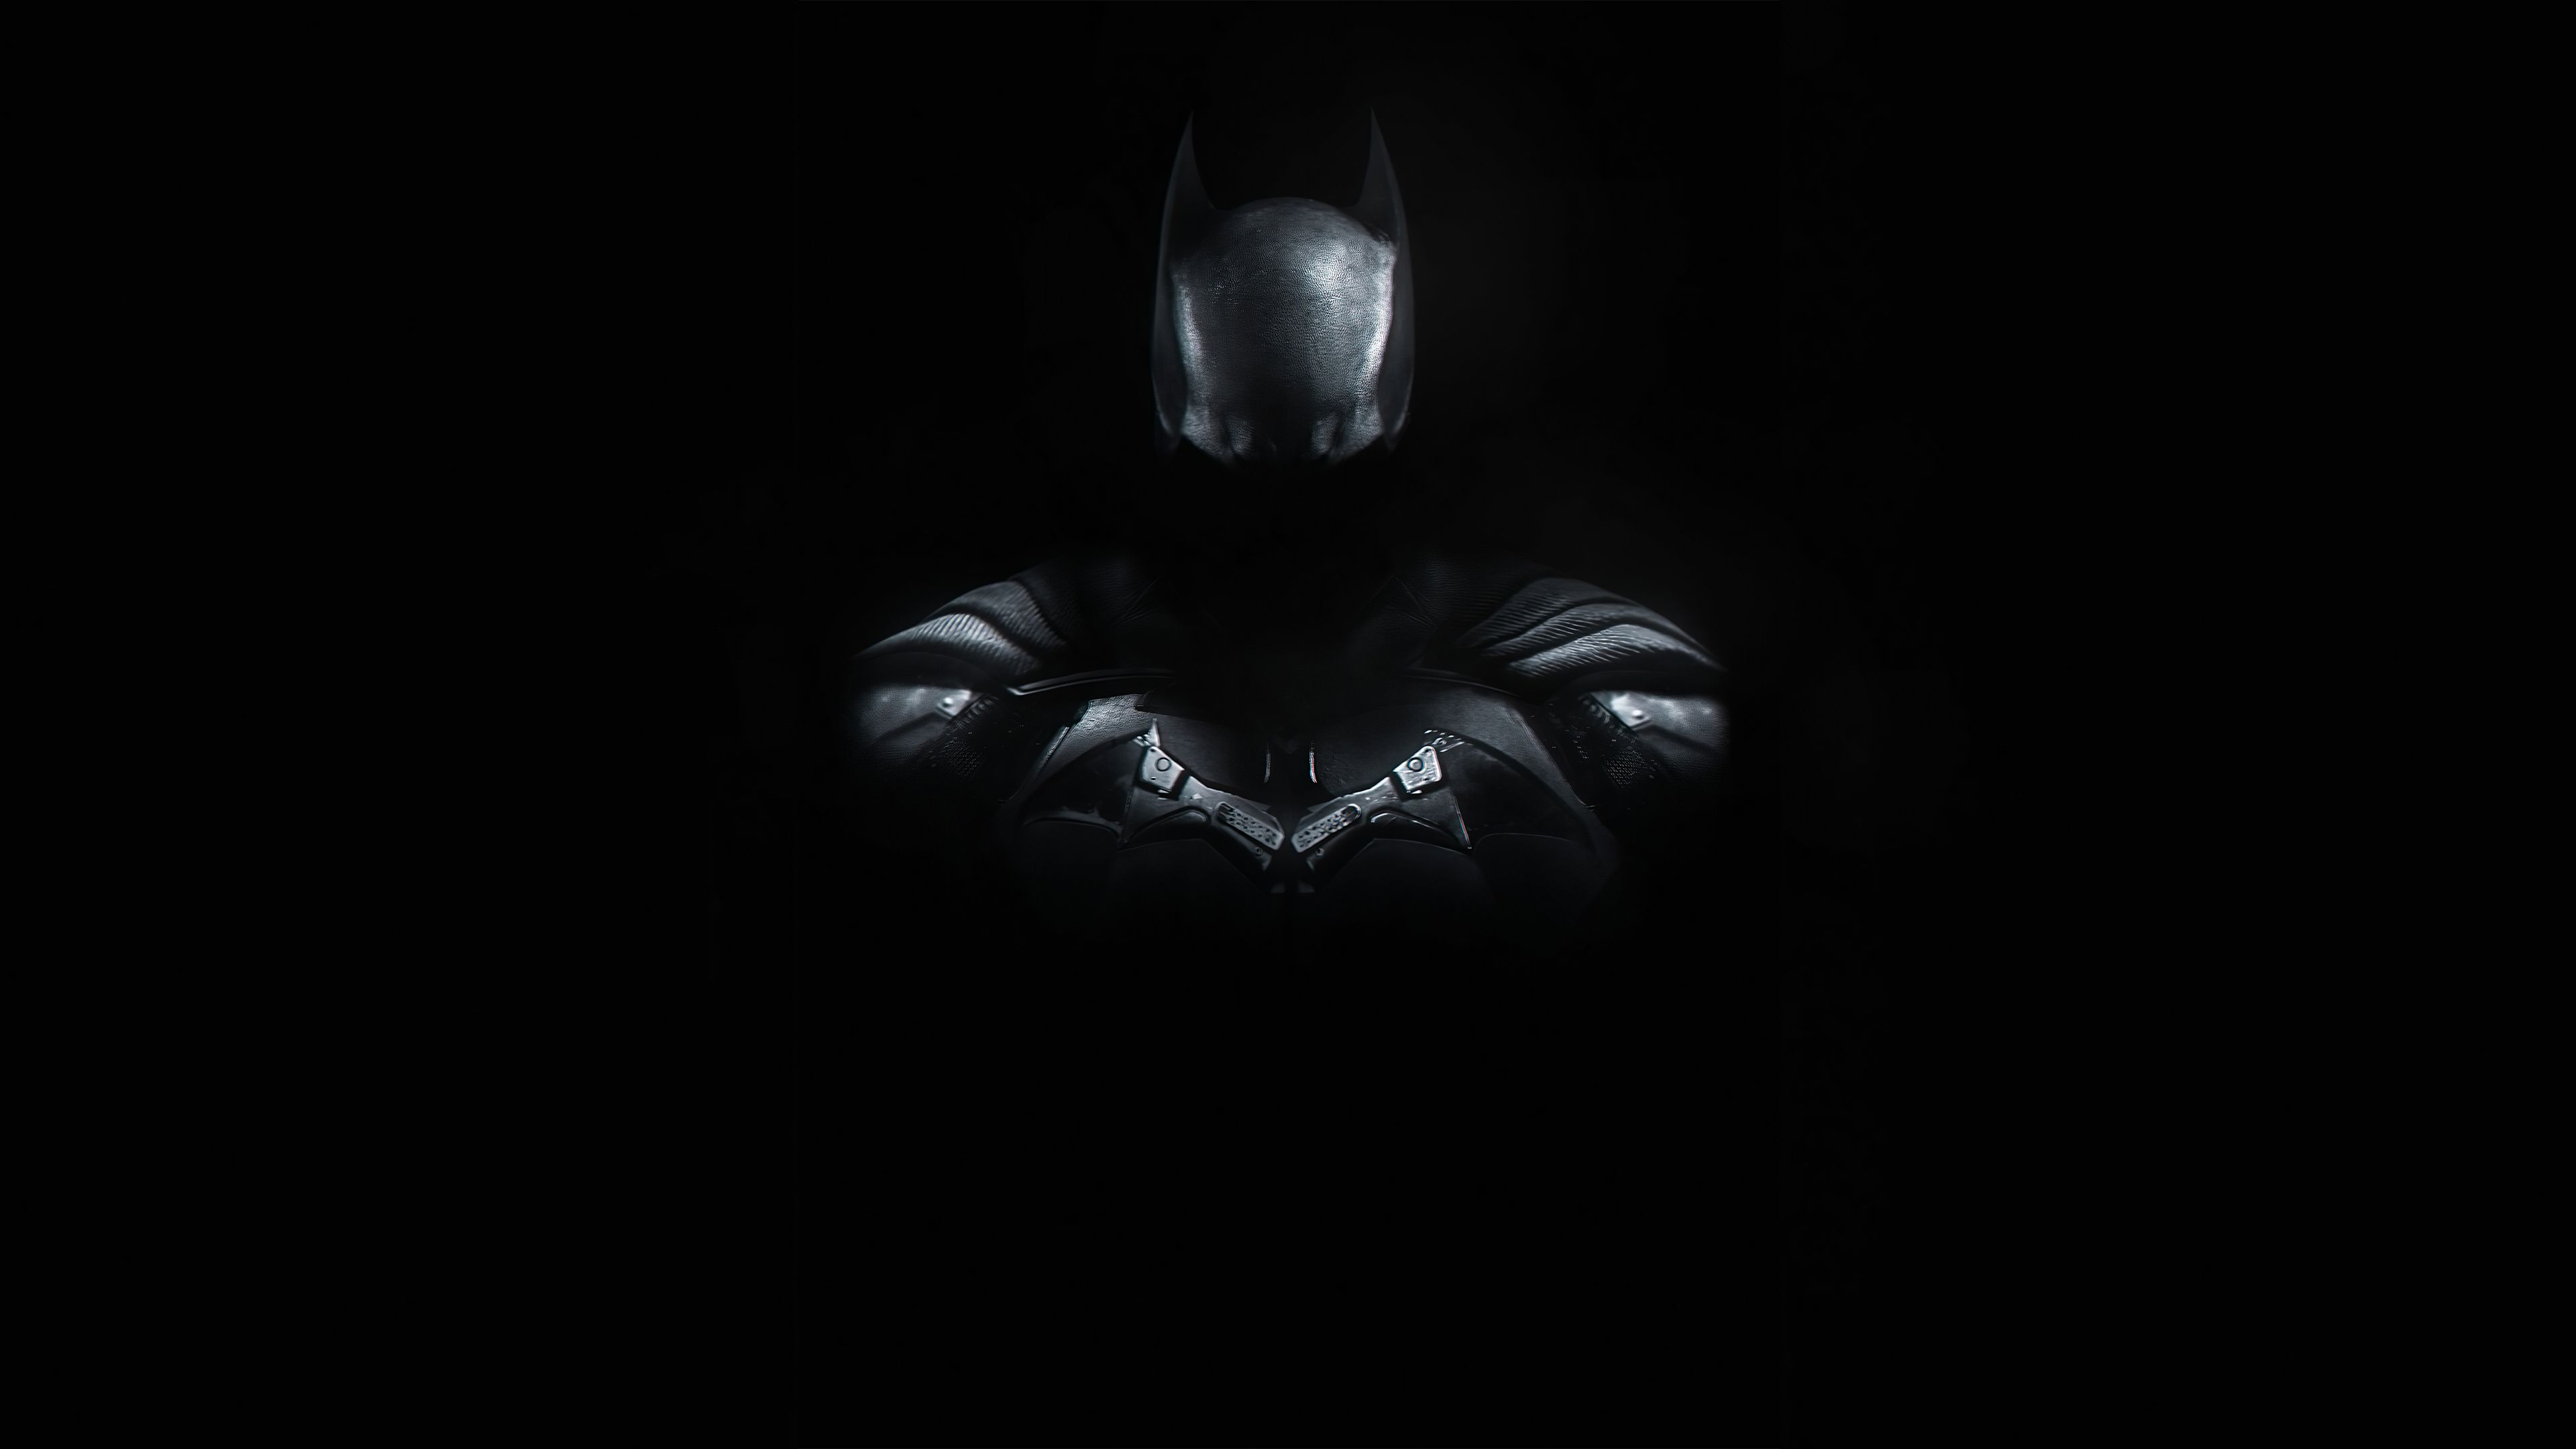 1920x1080 batman pc wallpaper free download hd  Superhero wallpaper, Batman  wallpaper, Superhero